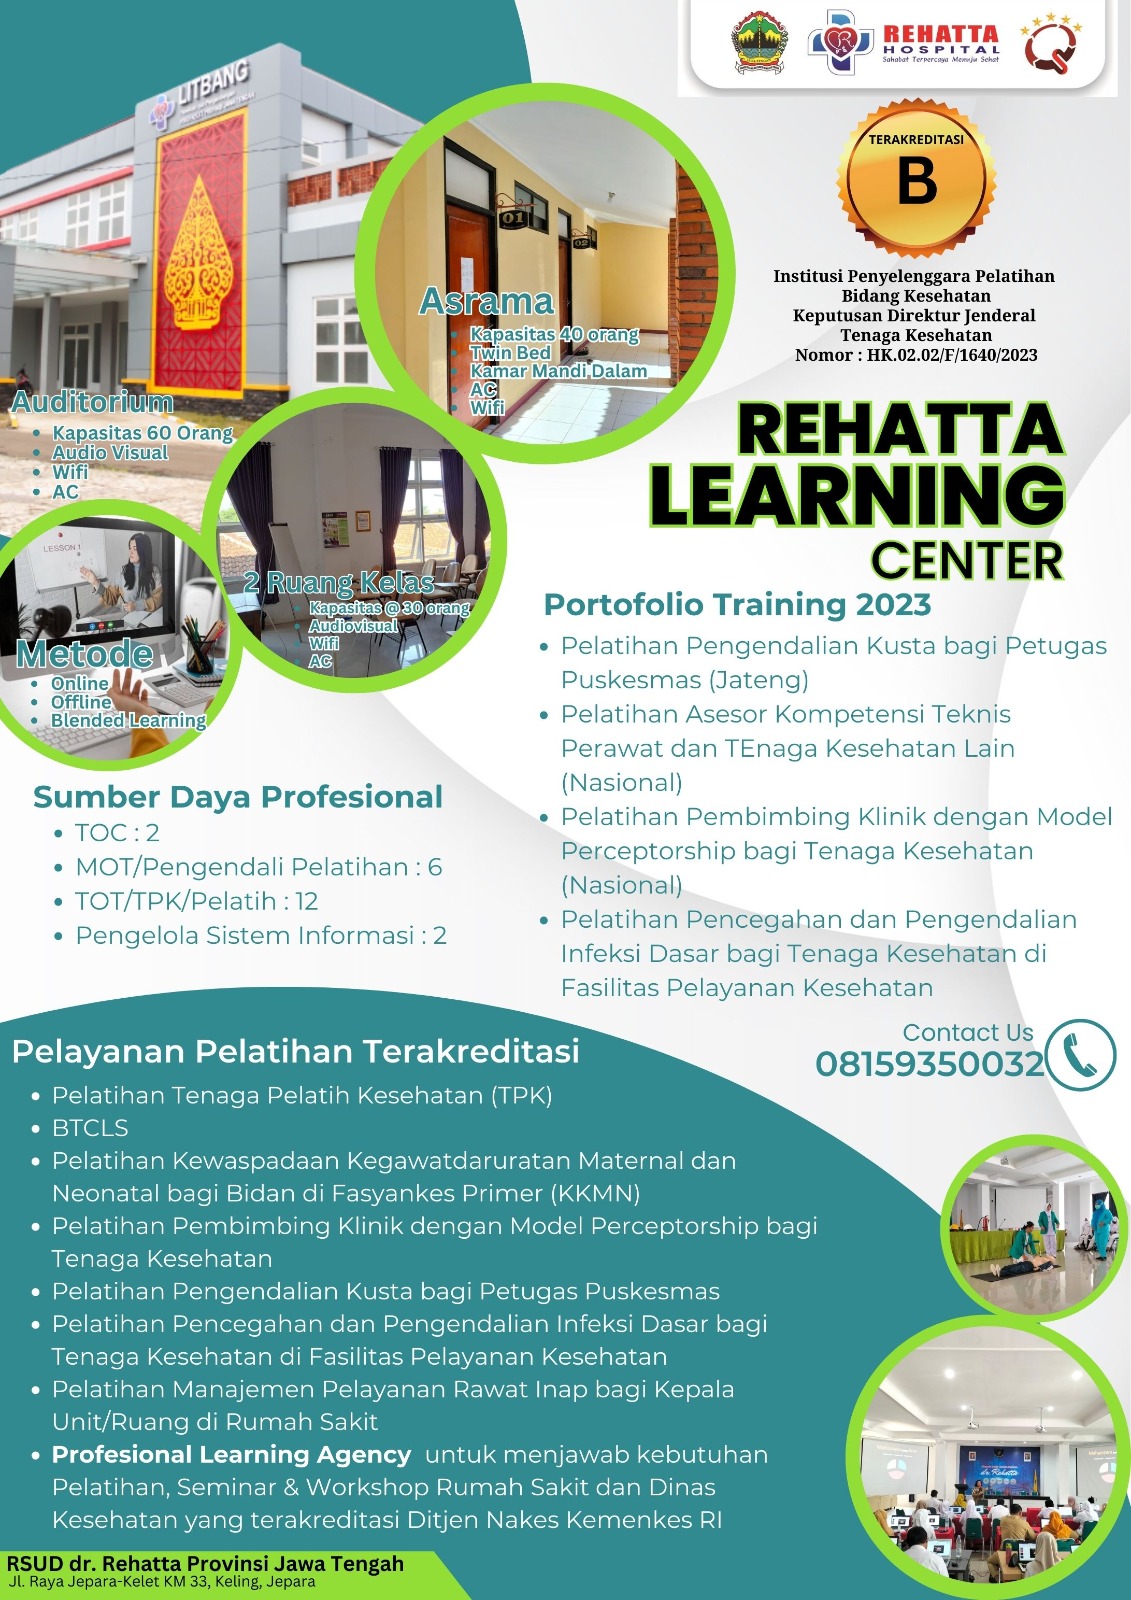 Rehatta Learning Center